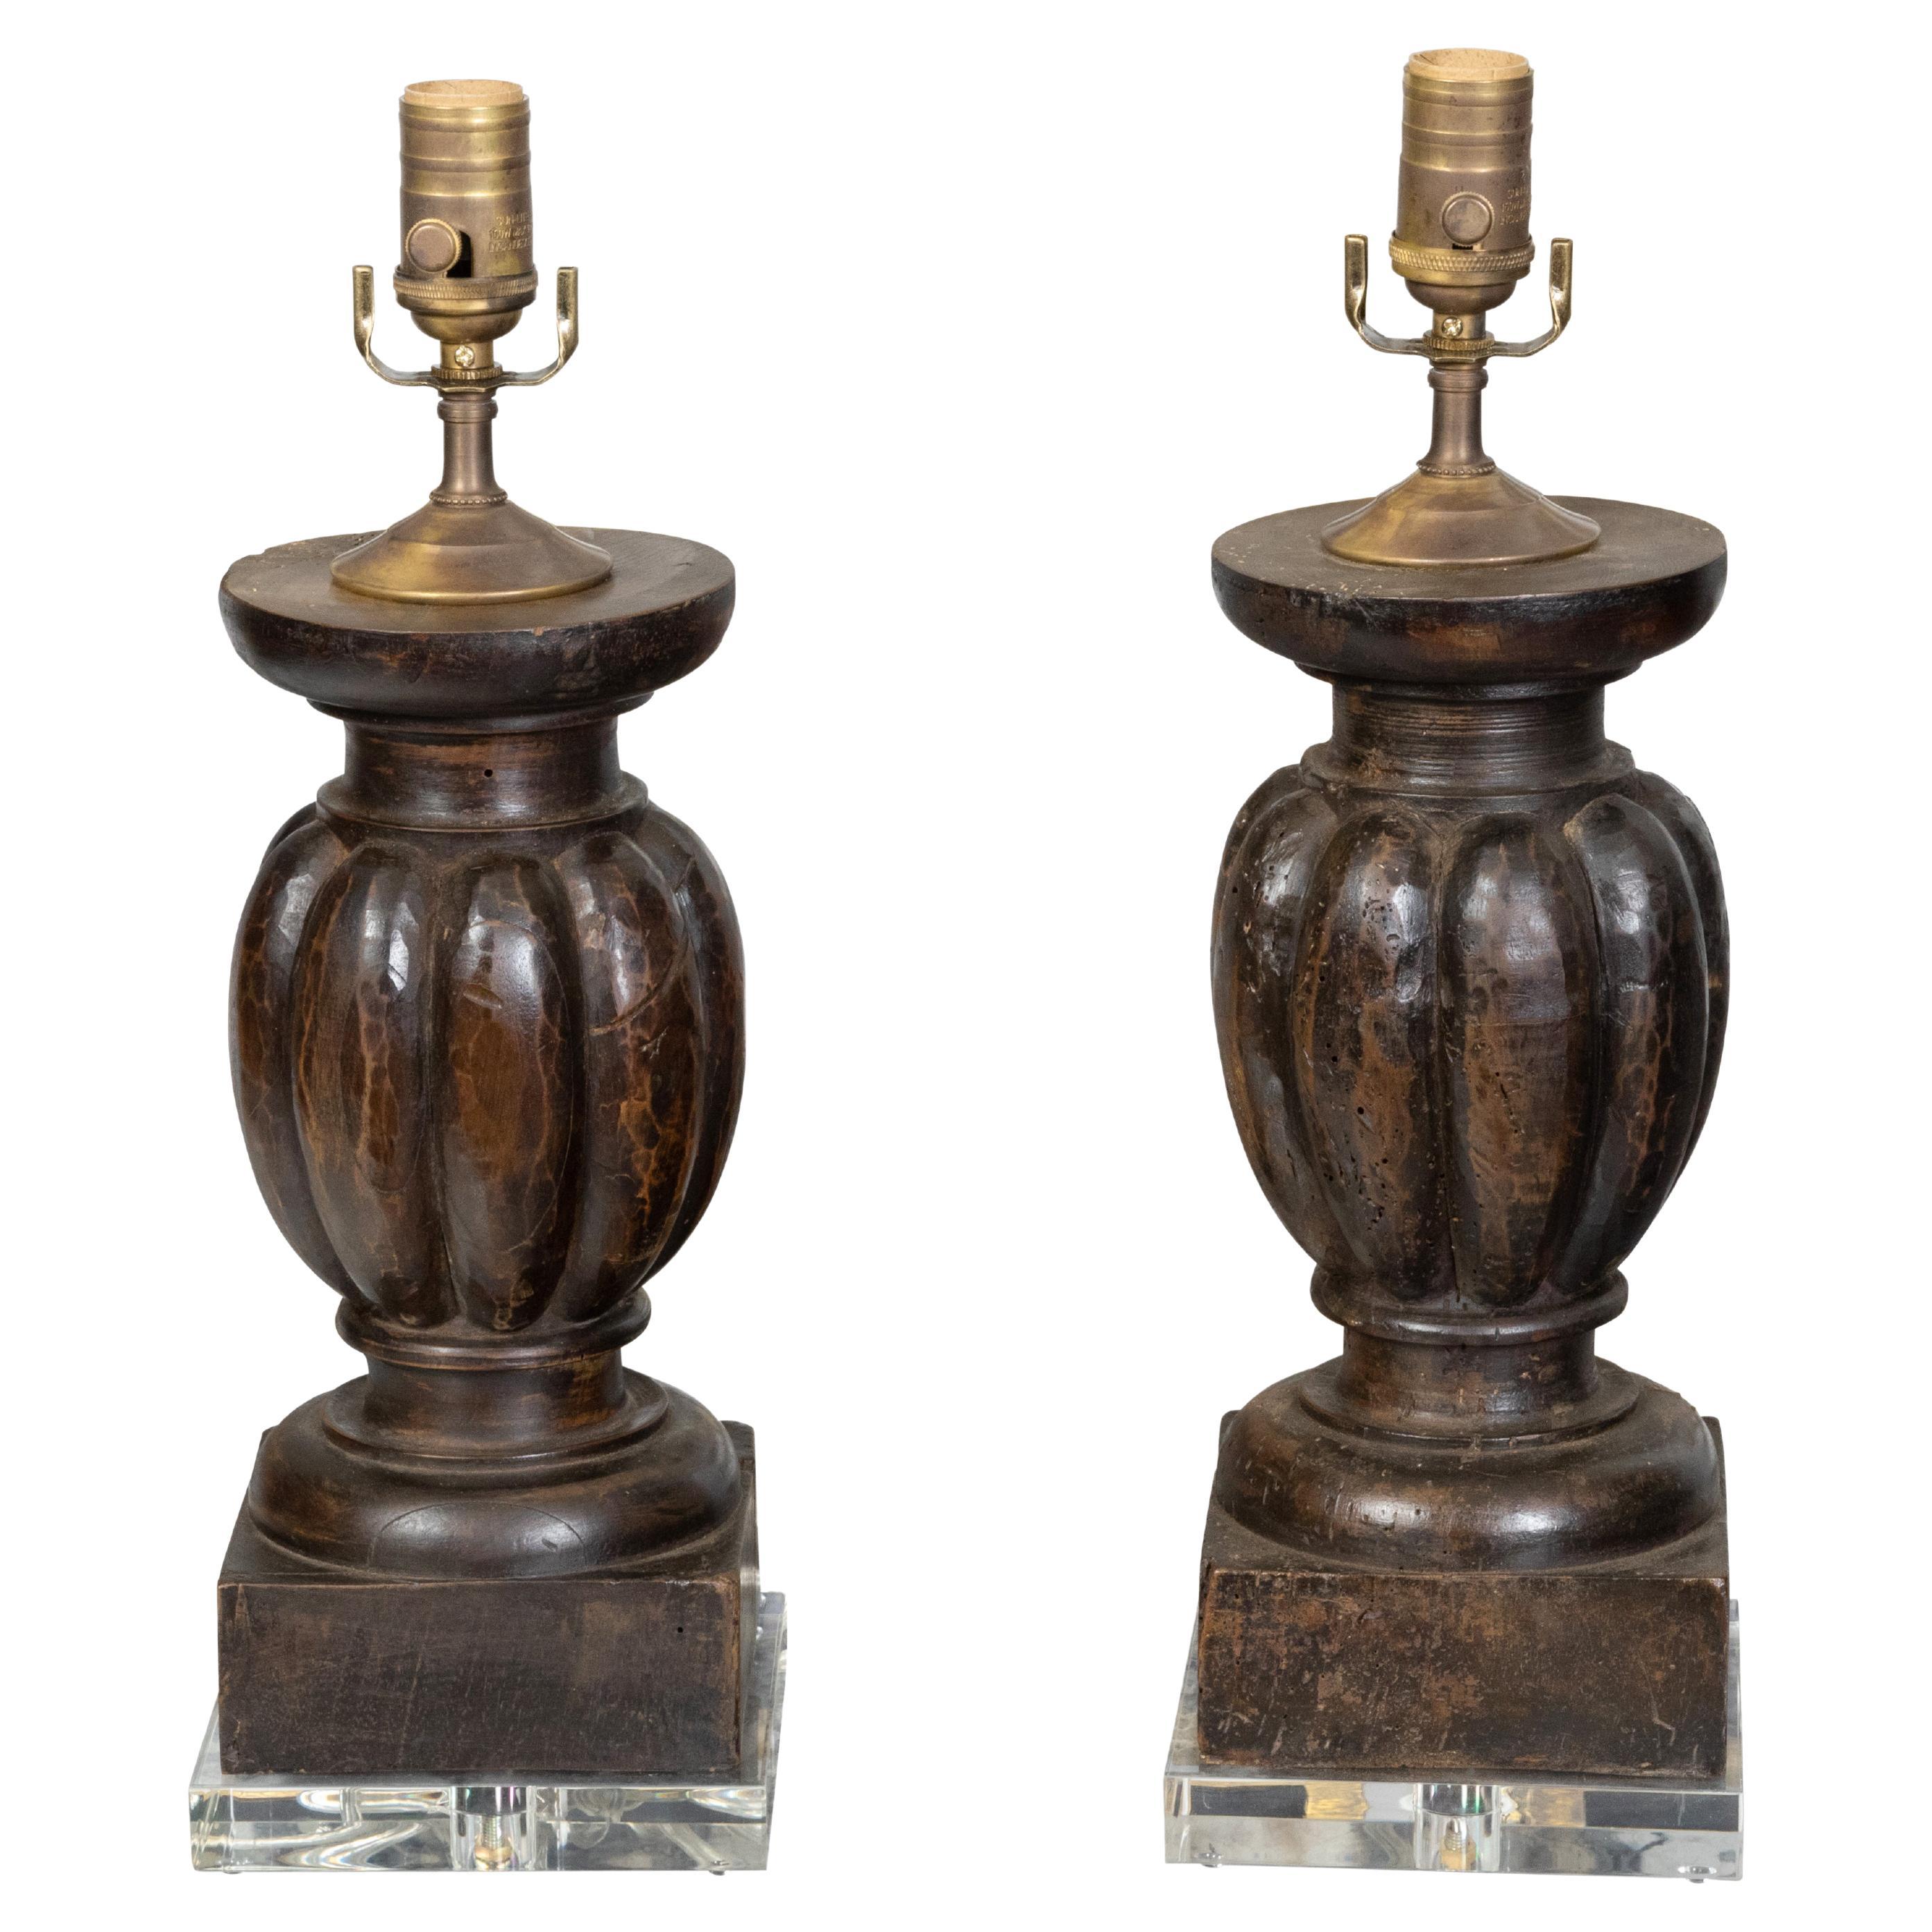 Paar italienische Balusterfragmente aus dem 19. Jahrhundert, die zu verdrahteten Lampen auf Lucite verarbeitet wurden